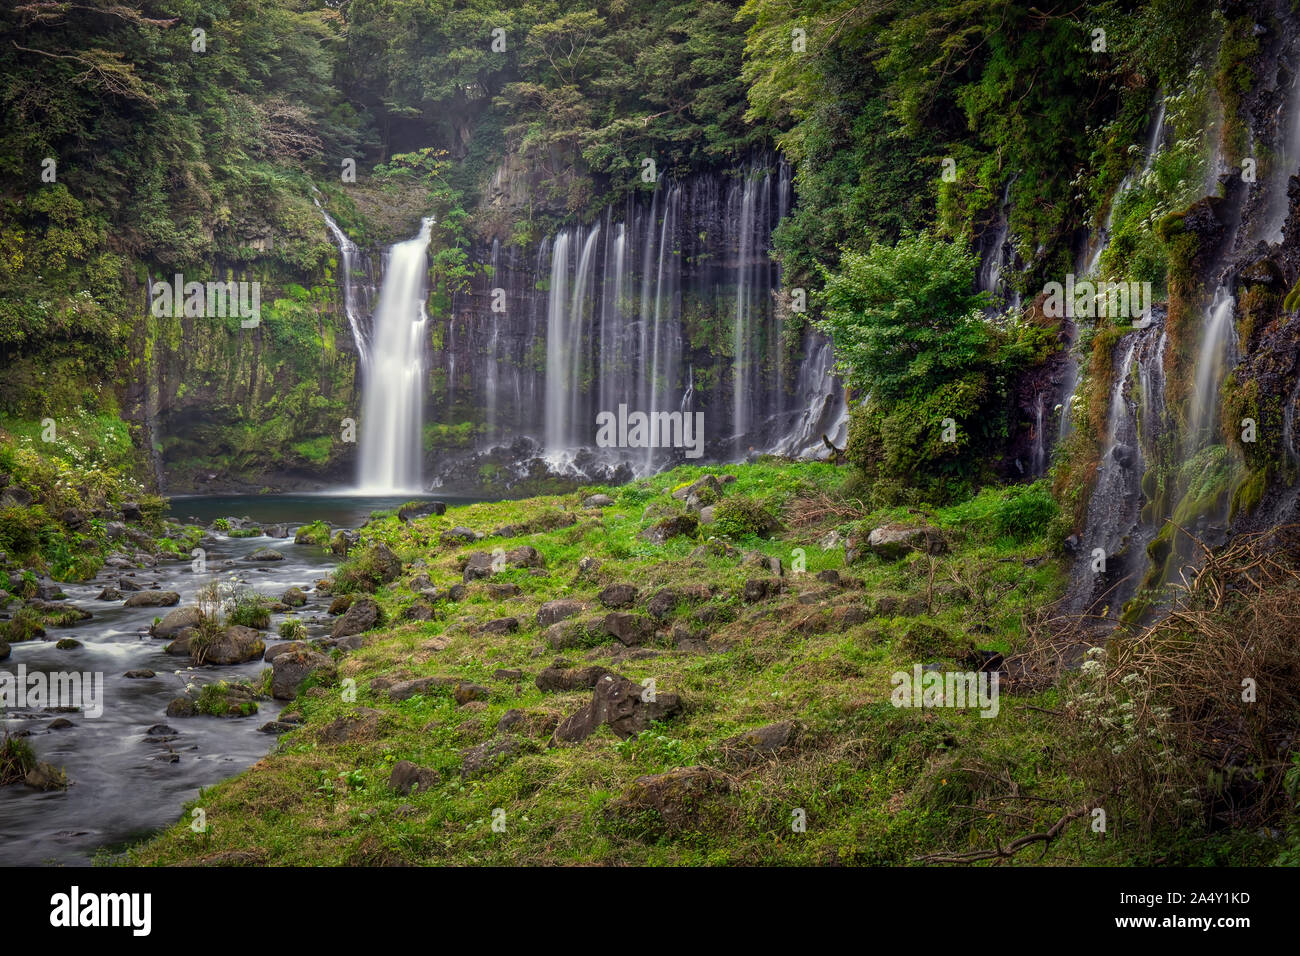 Die shiraito fällt in der Nähe von Fujinomiya, Japan, auf der Liste der Top 100 Wasserfälle Japans. Stockfoto